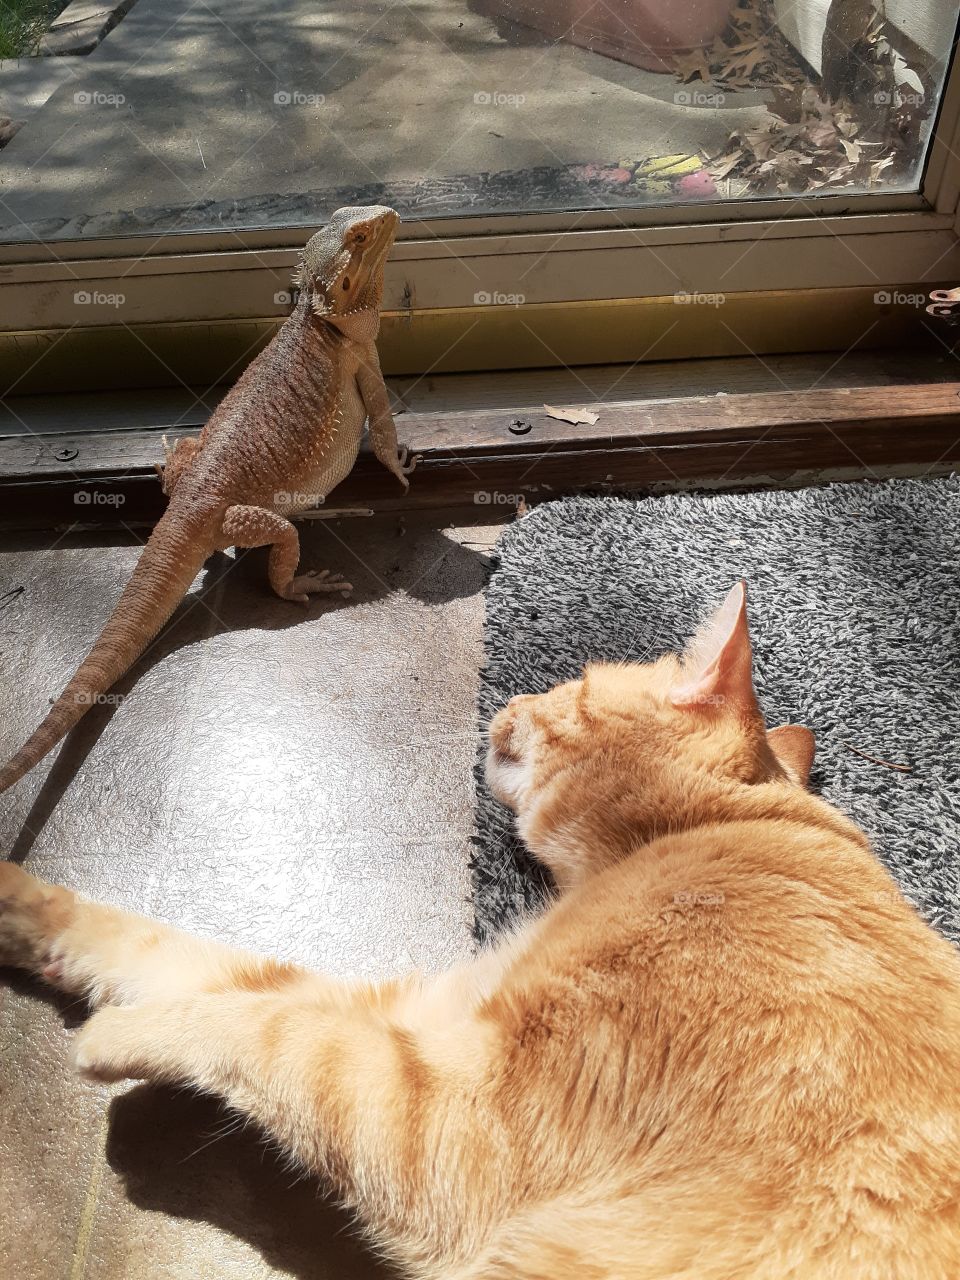 Cat & Lizard Friends